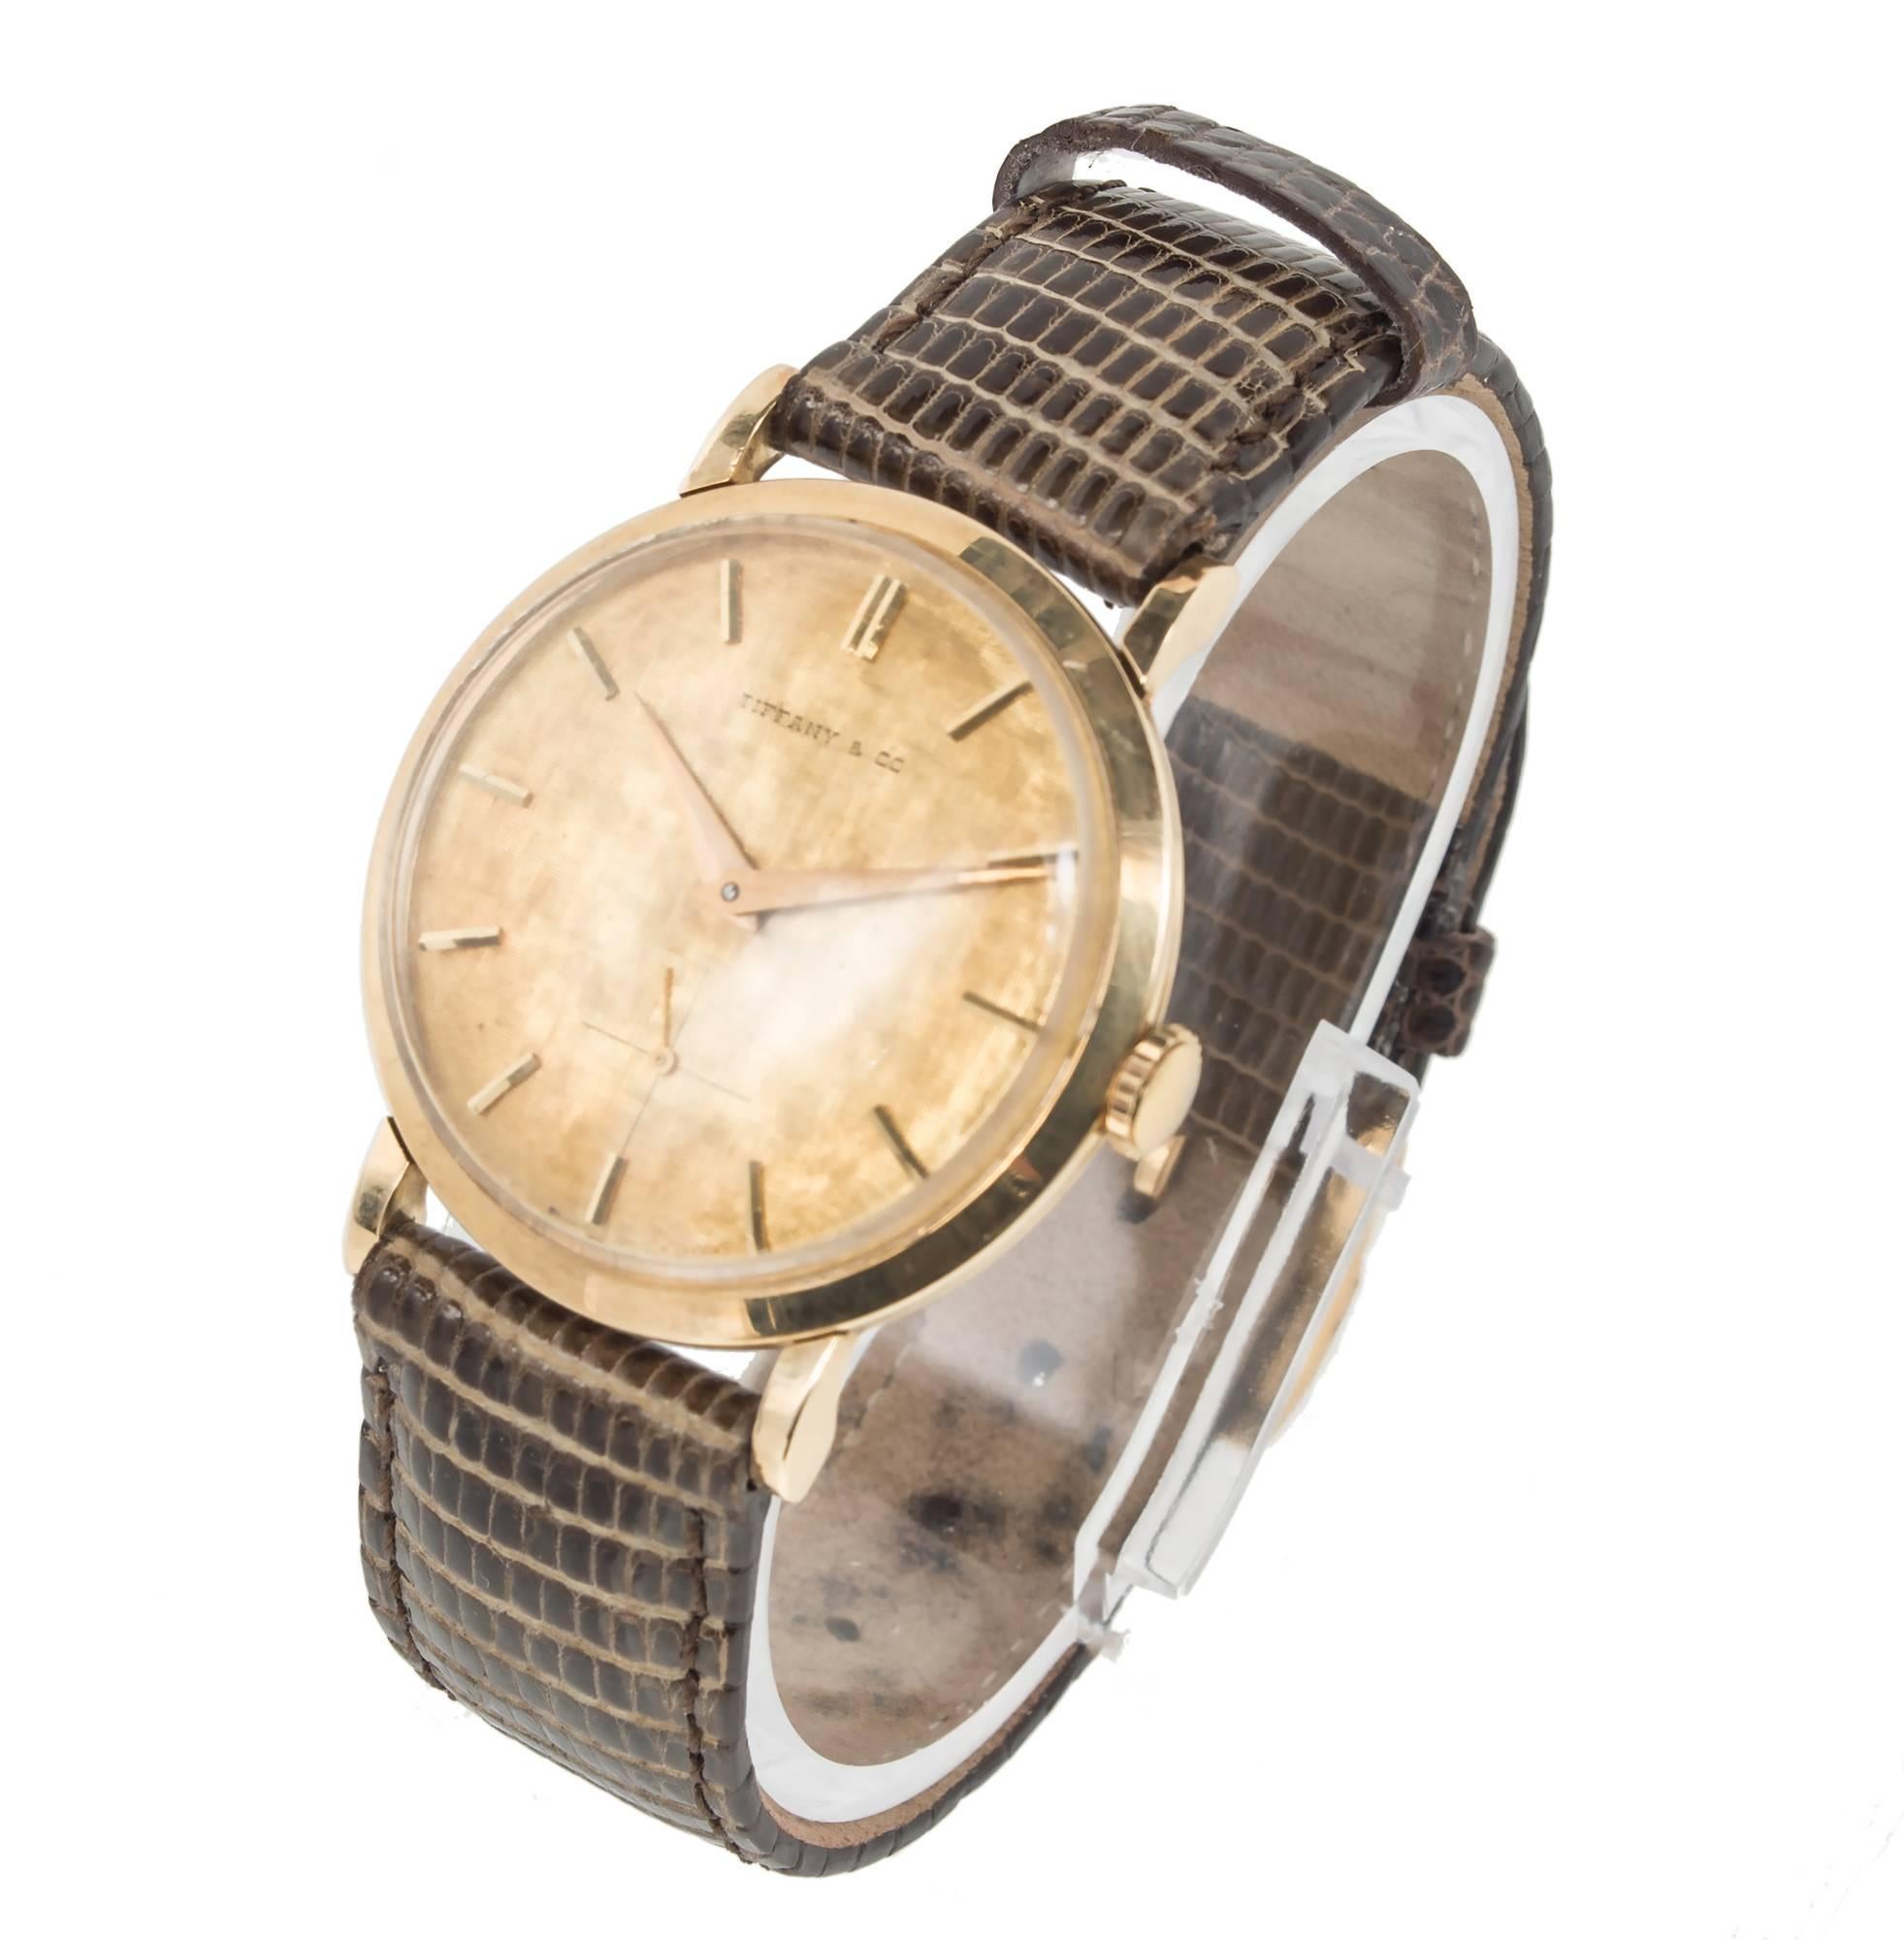 Tiffany & Co. La montre-bracelet pour homme Movado est une pièce intemporelle. Réalisée en or jaune 14 carats, cette montre-bracelet vendue par la célèbre marque Tiffany & Co. allie sans effort un style classique à un design moderne. Cadran en